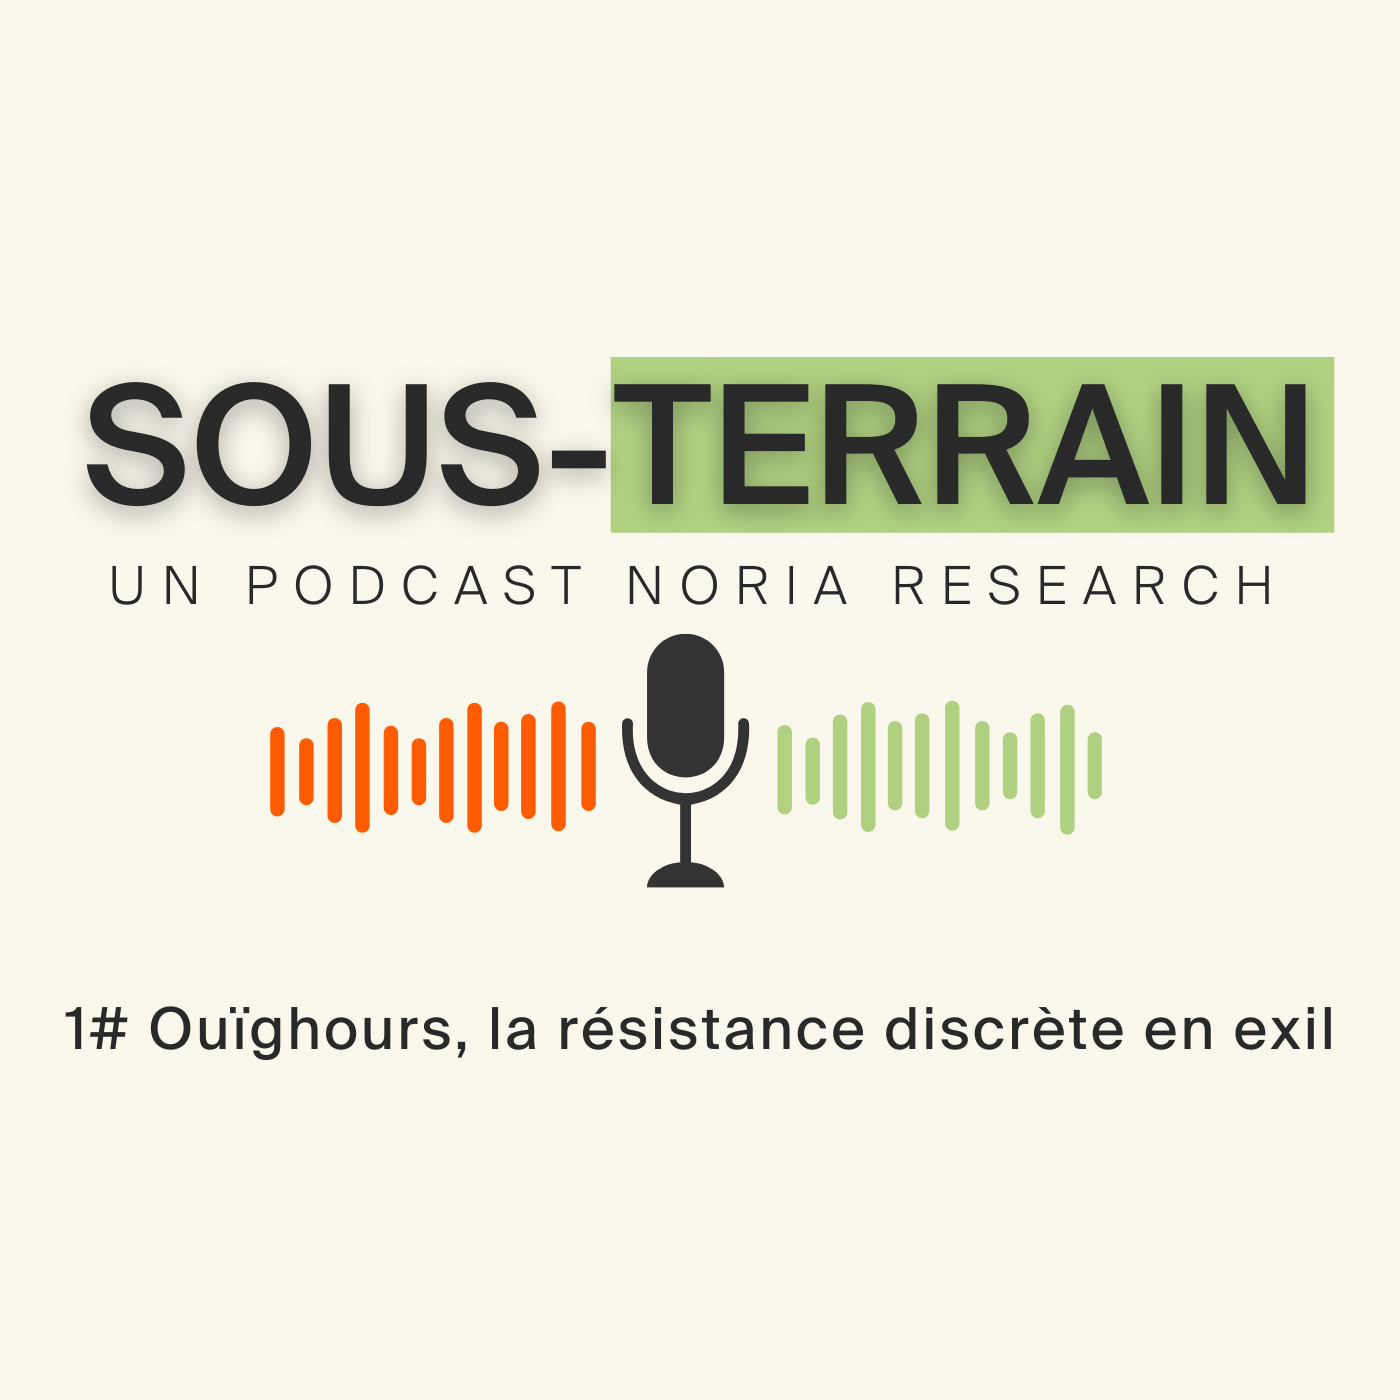 SOUS-TERRAIN 1# Ouïghours, la résistance discrète en exil